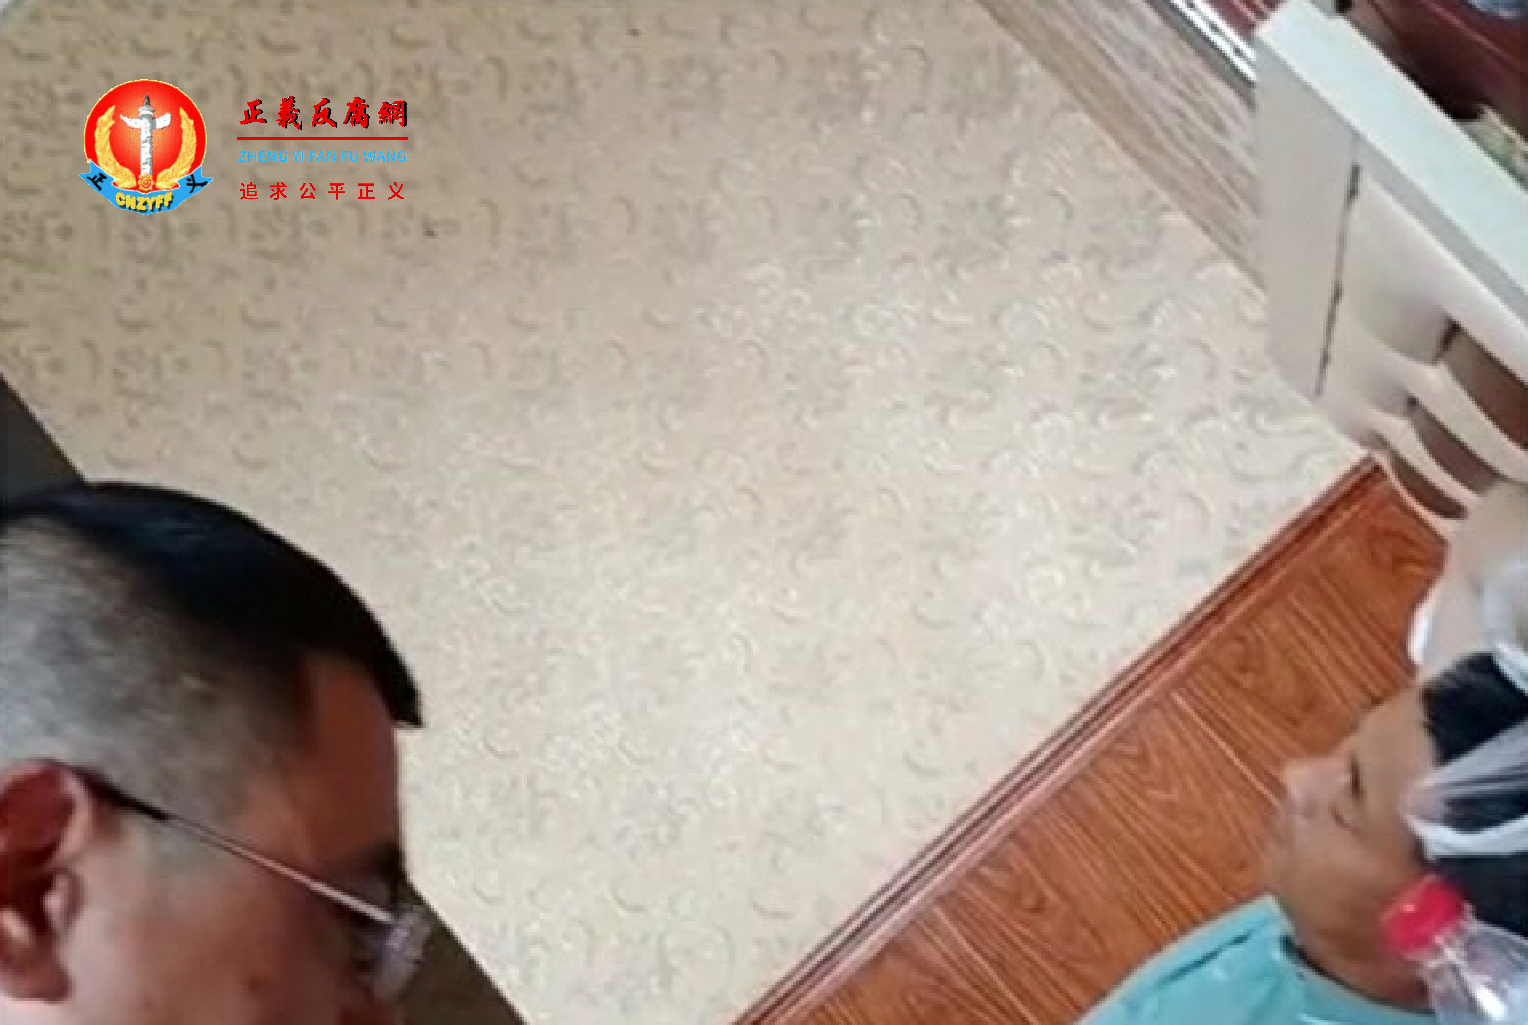 6月2日黑龙江省访民刘杰被当地宁远镇派出所非法拘禁在宾馆，由两警察贴身监控，近日为确保维稳，又将他送拘留所。.png